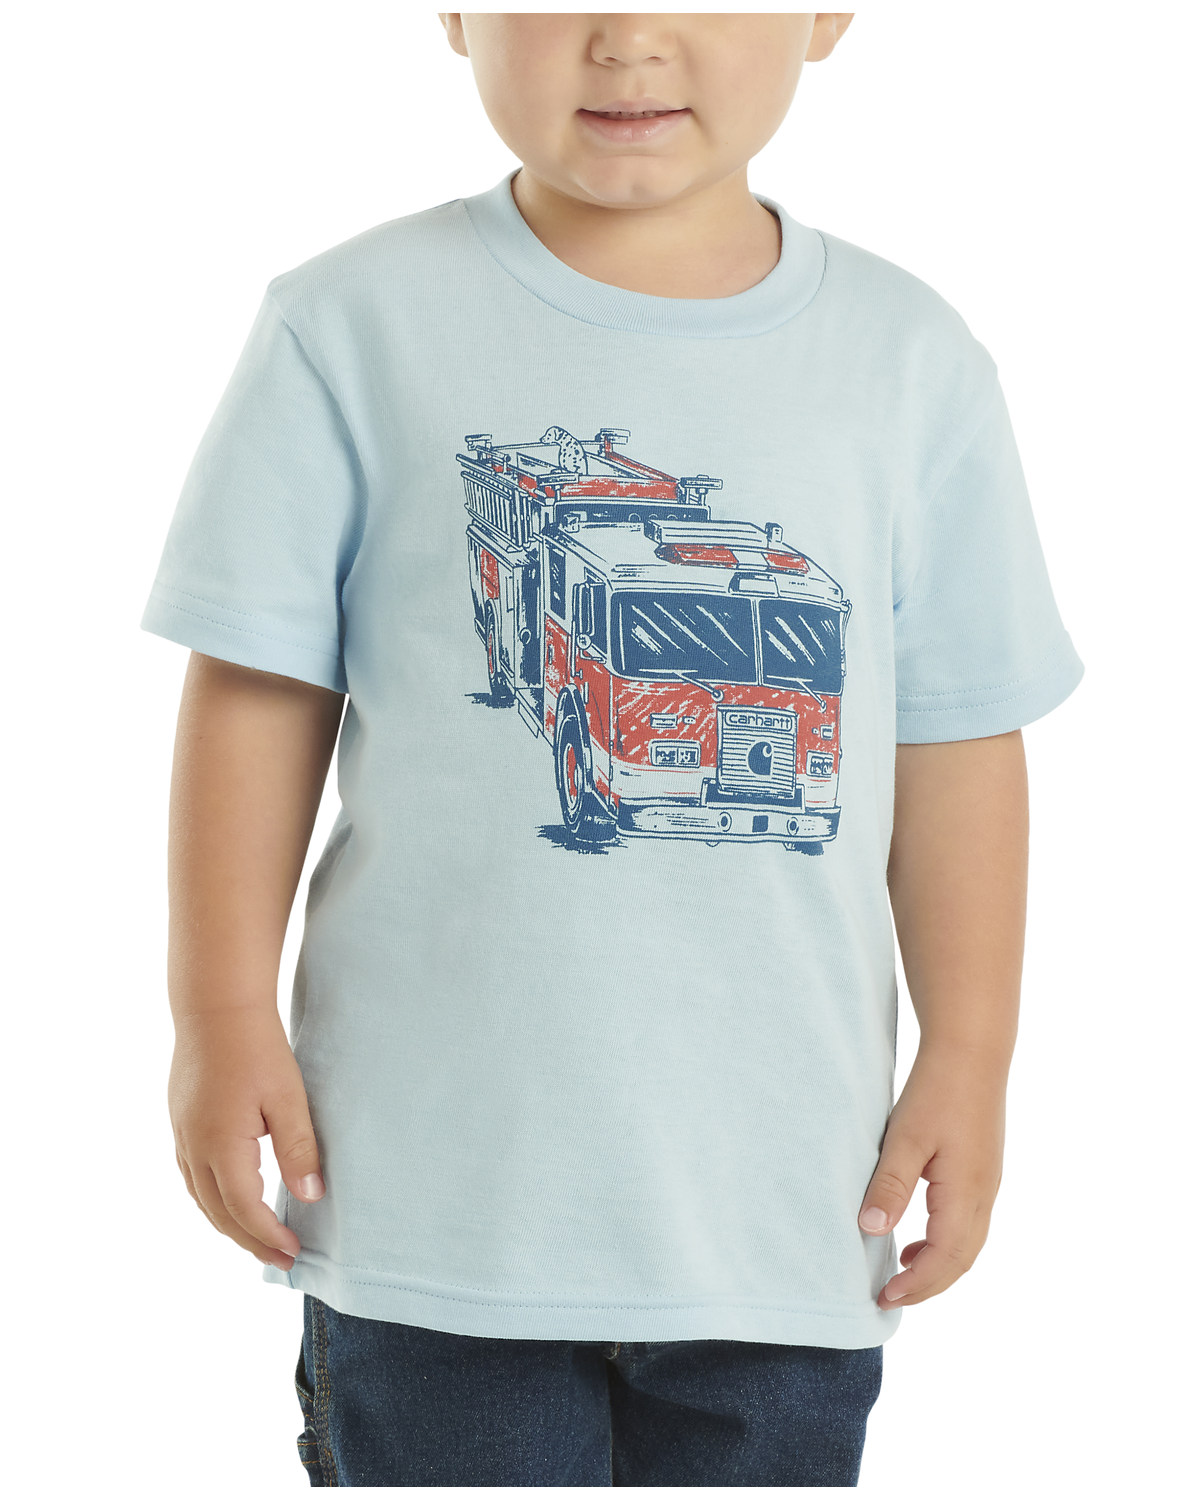 Carhartt Toddler Boys' Fire Truck Short Sleeve Graphic T-Shirt